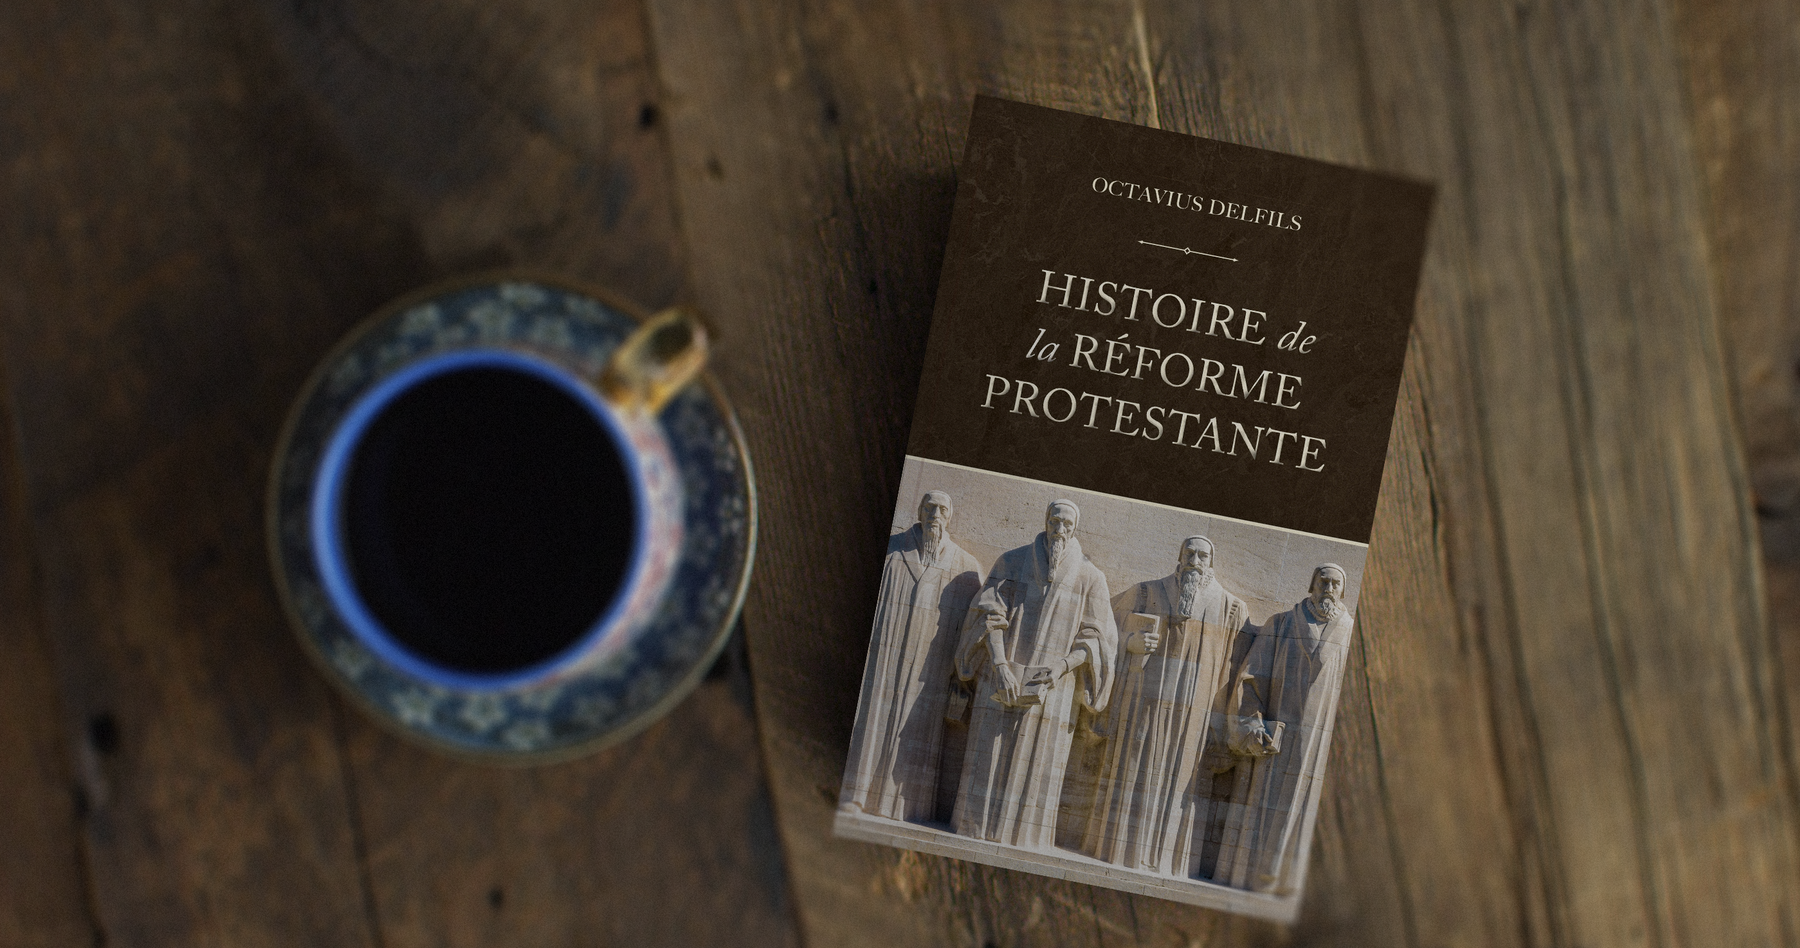 La nécessité d’une réforme : l’hégémonie de Rome - Chapitre 1 «Histoire de la réforme protestante» de Octavius Delfis